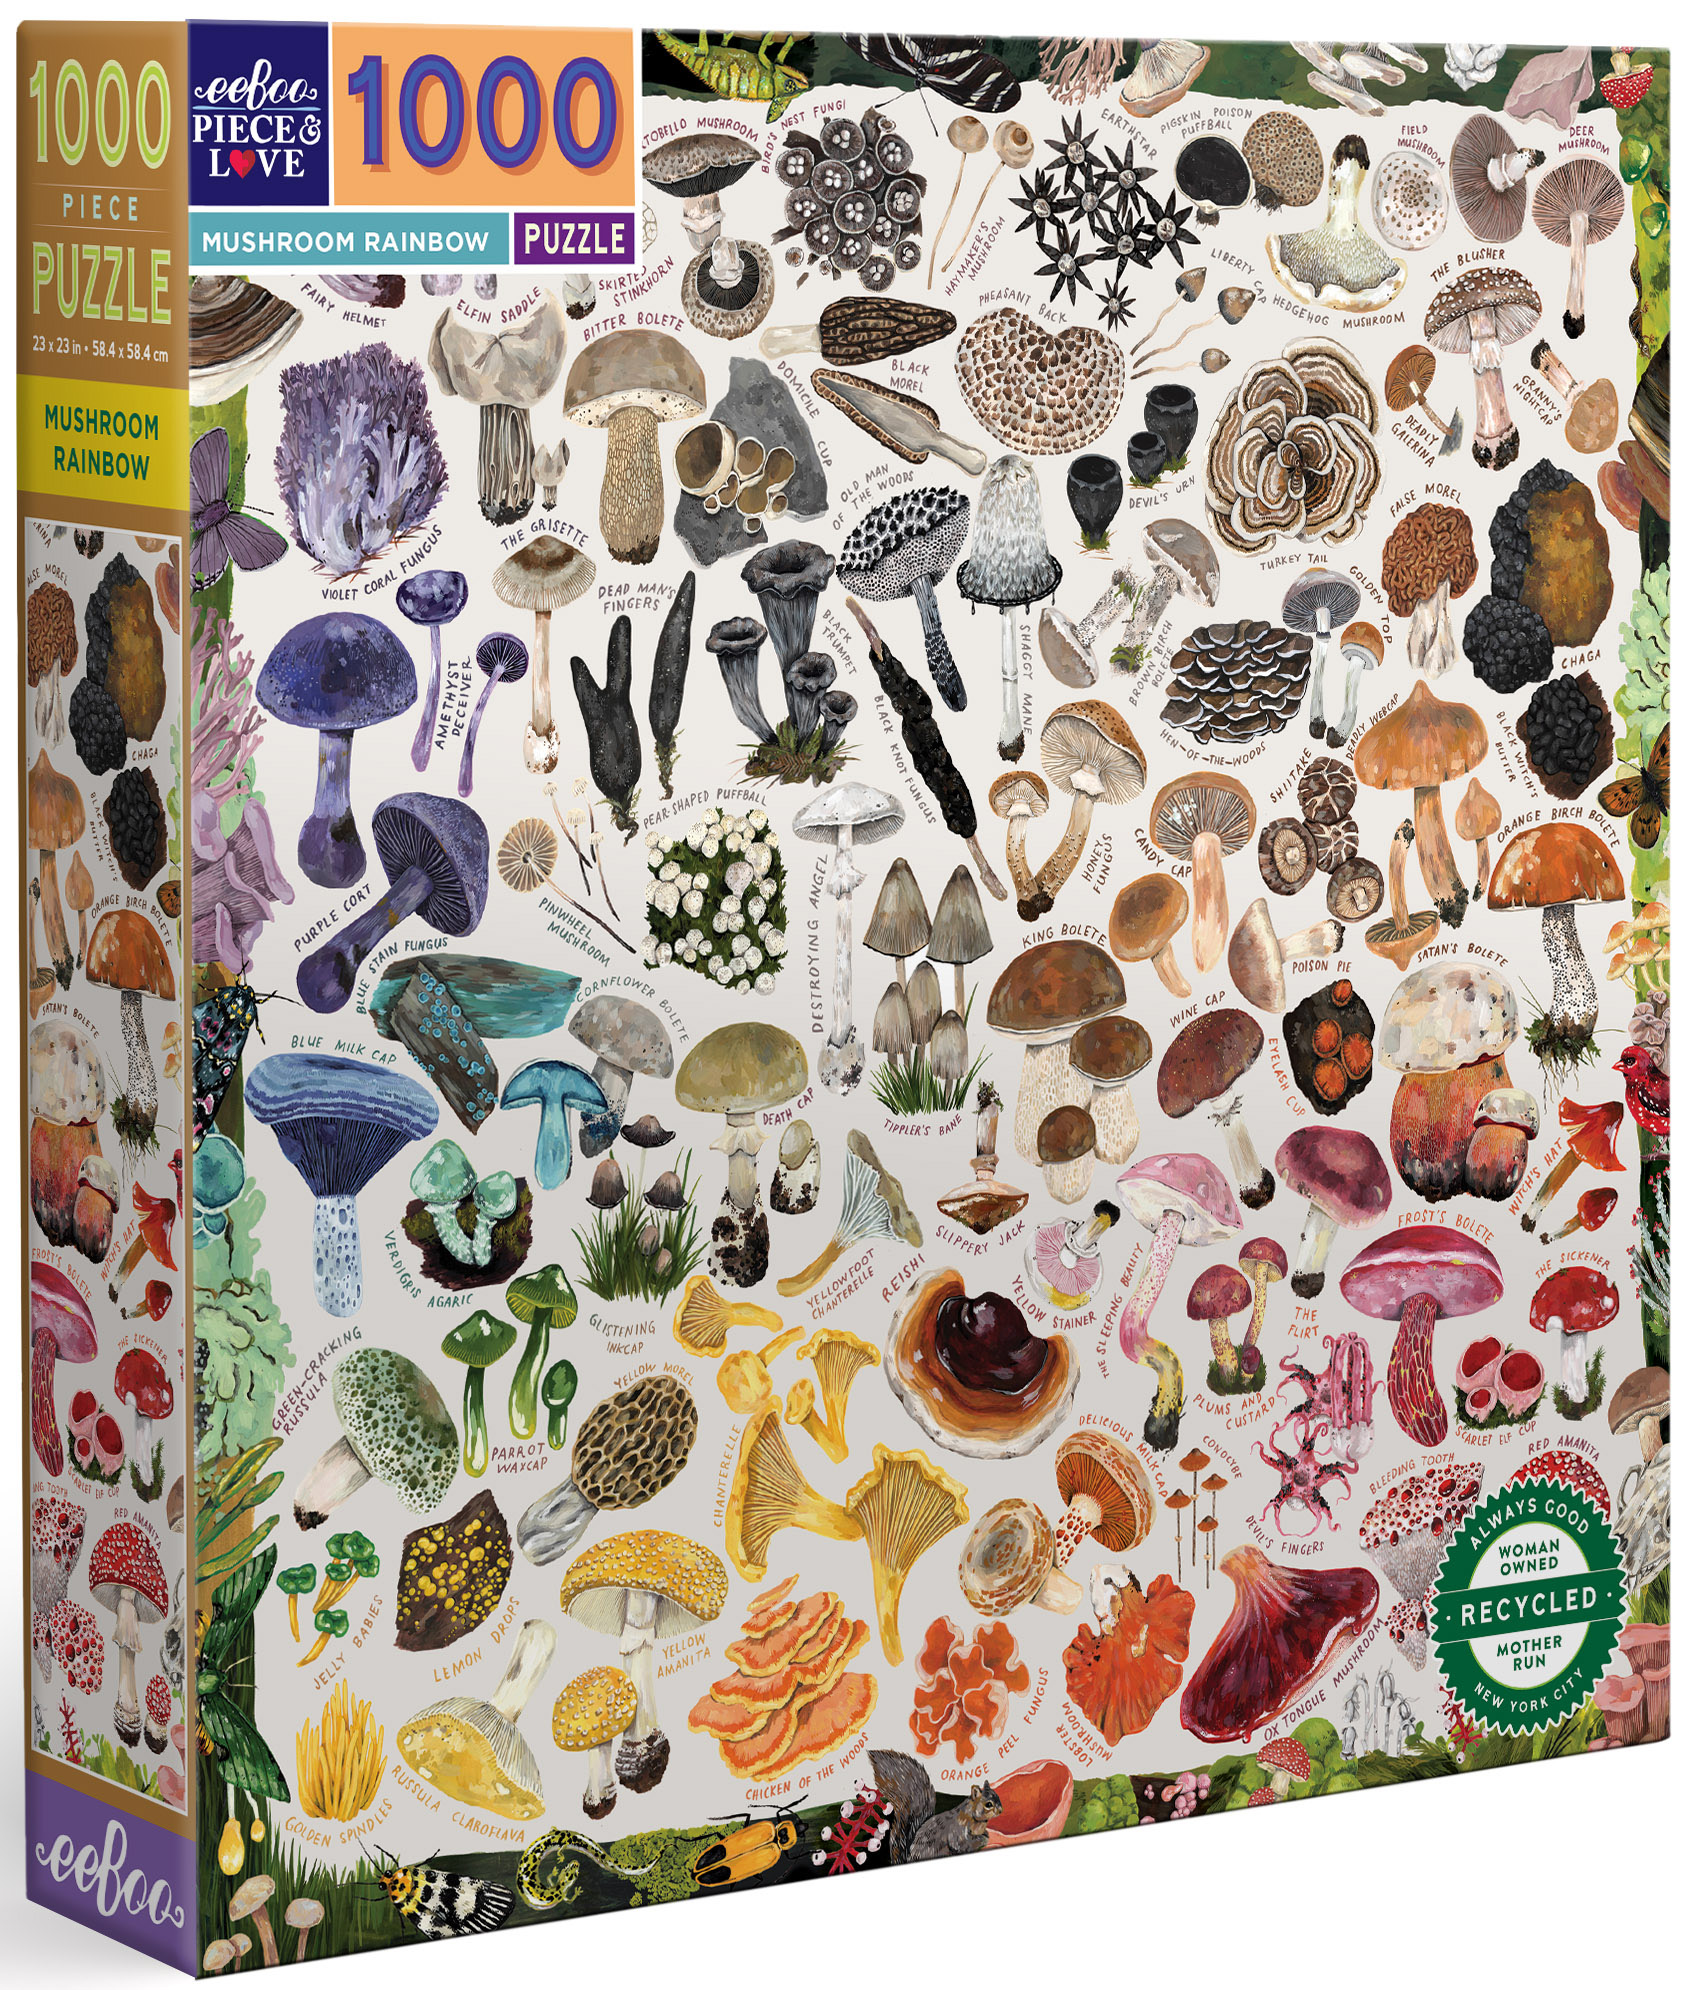 Mushroom Rainbow Collage Jigsaw Puzzle